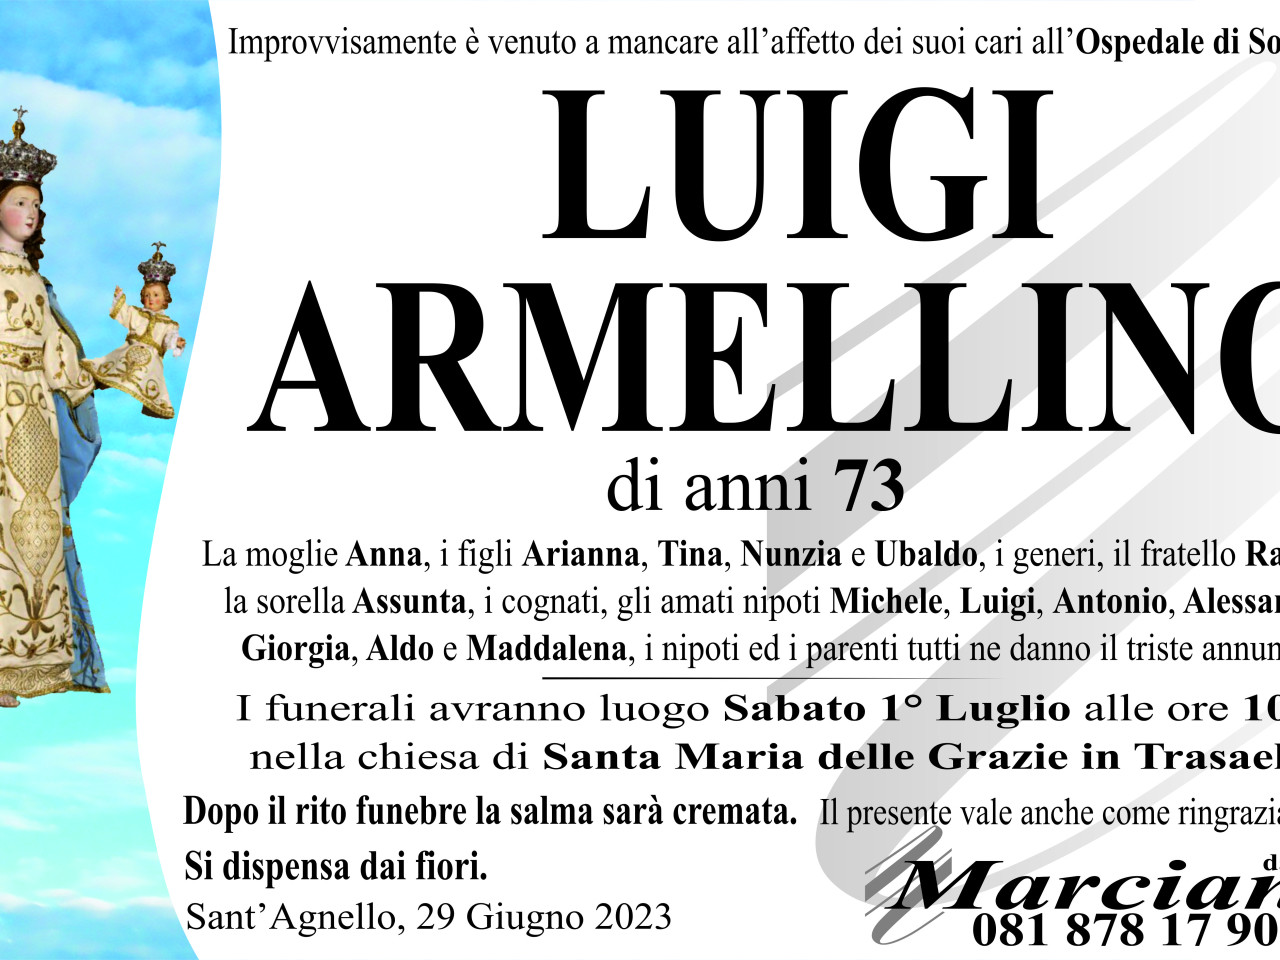 Luigi Armellino